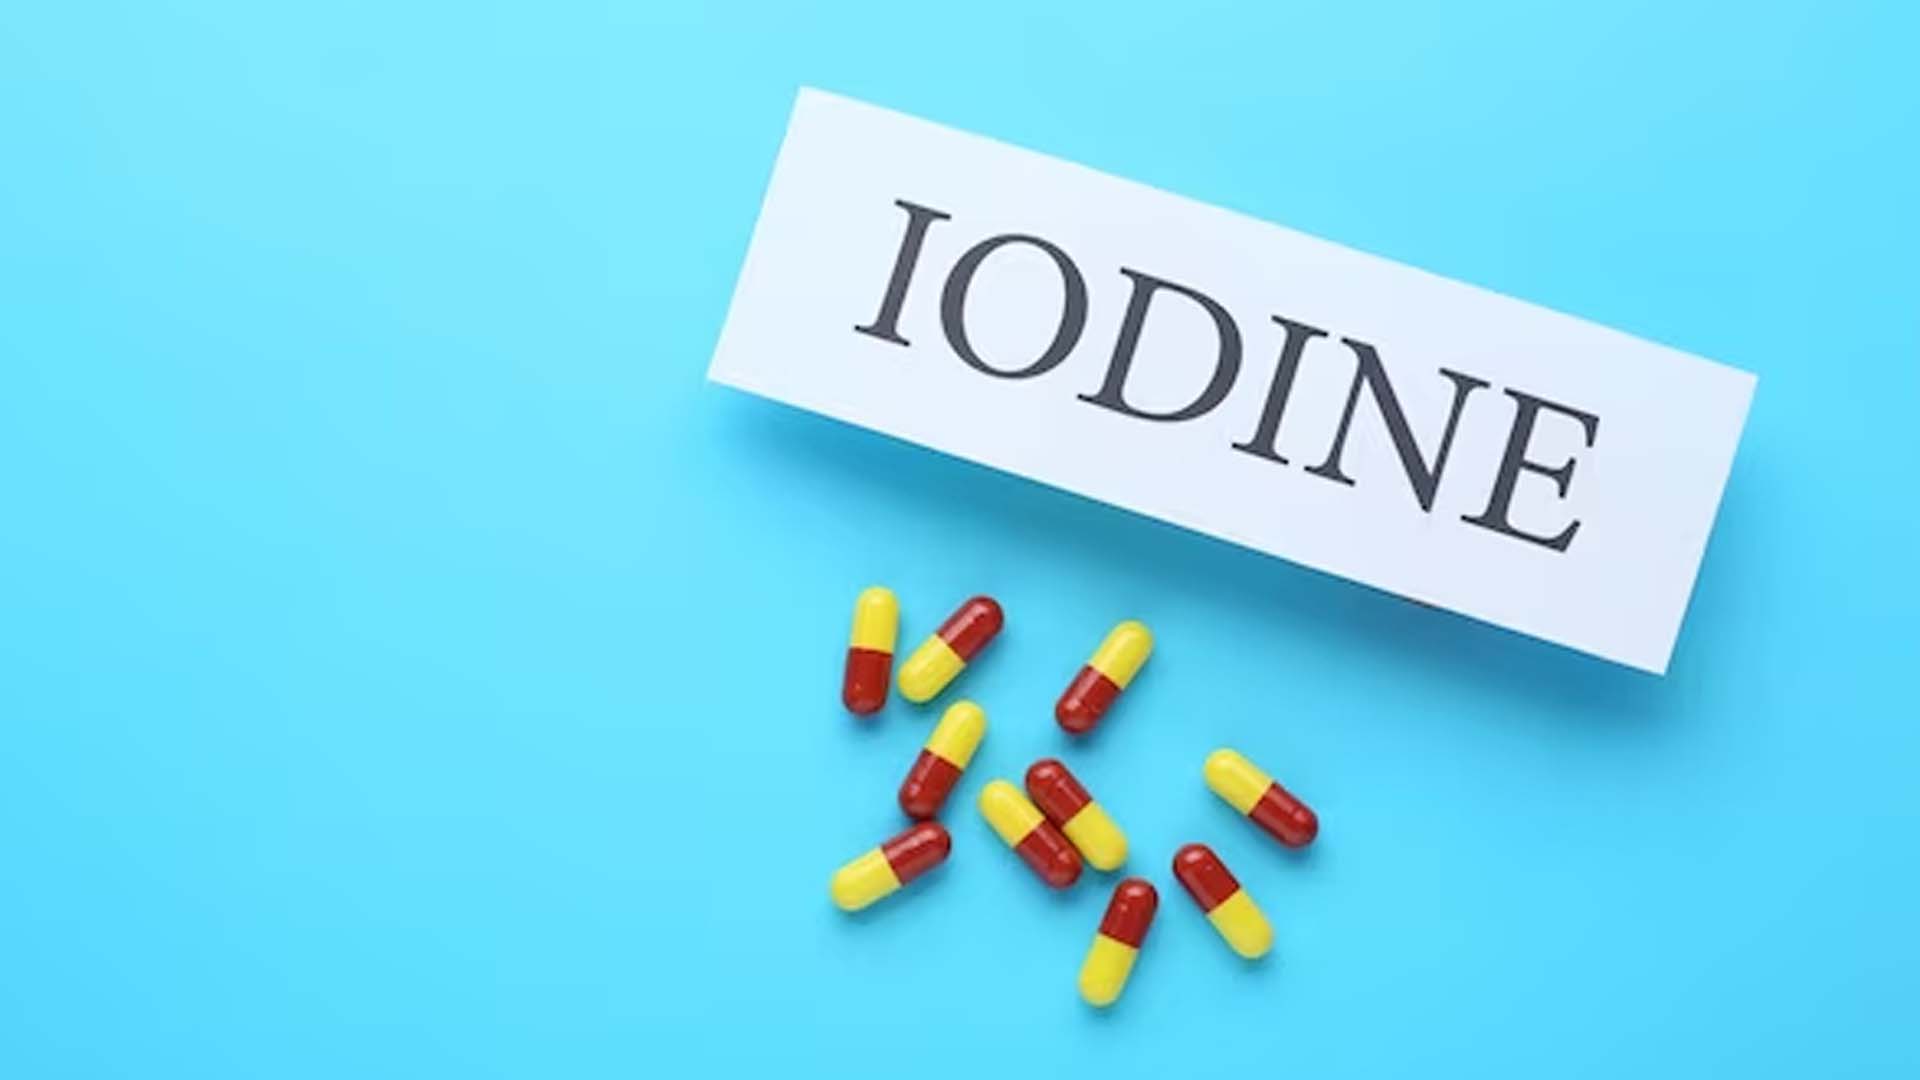 Deficiency of Iodine